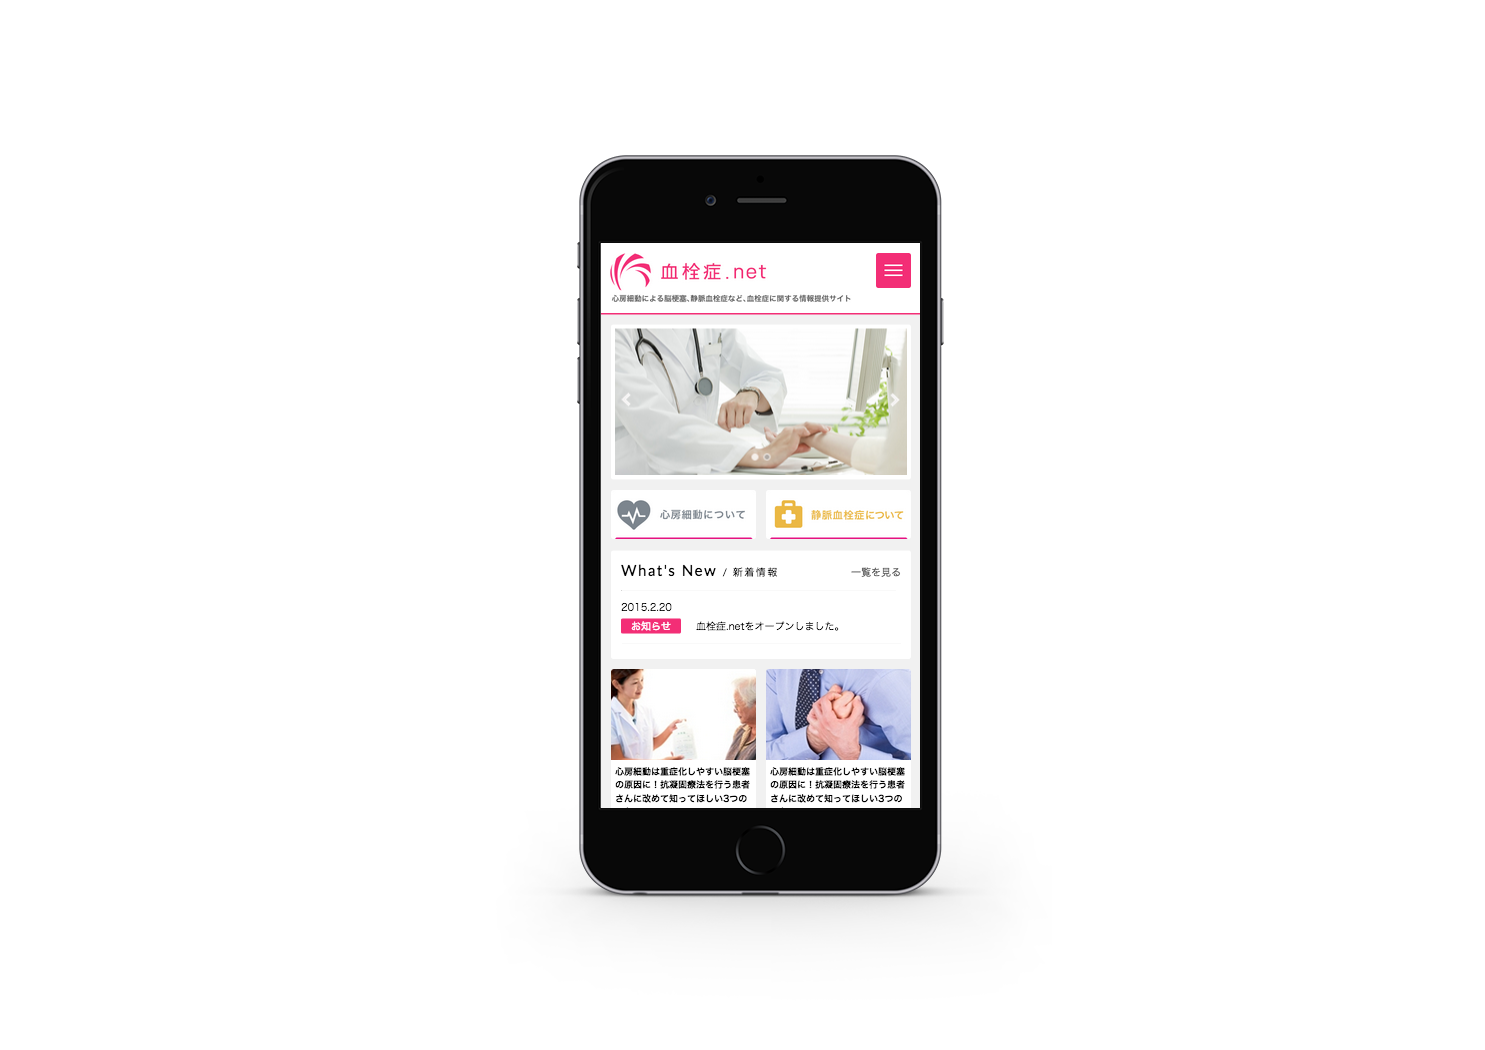 血栓症 .net  Official Smartphone site 2015